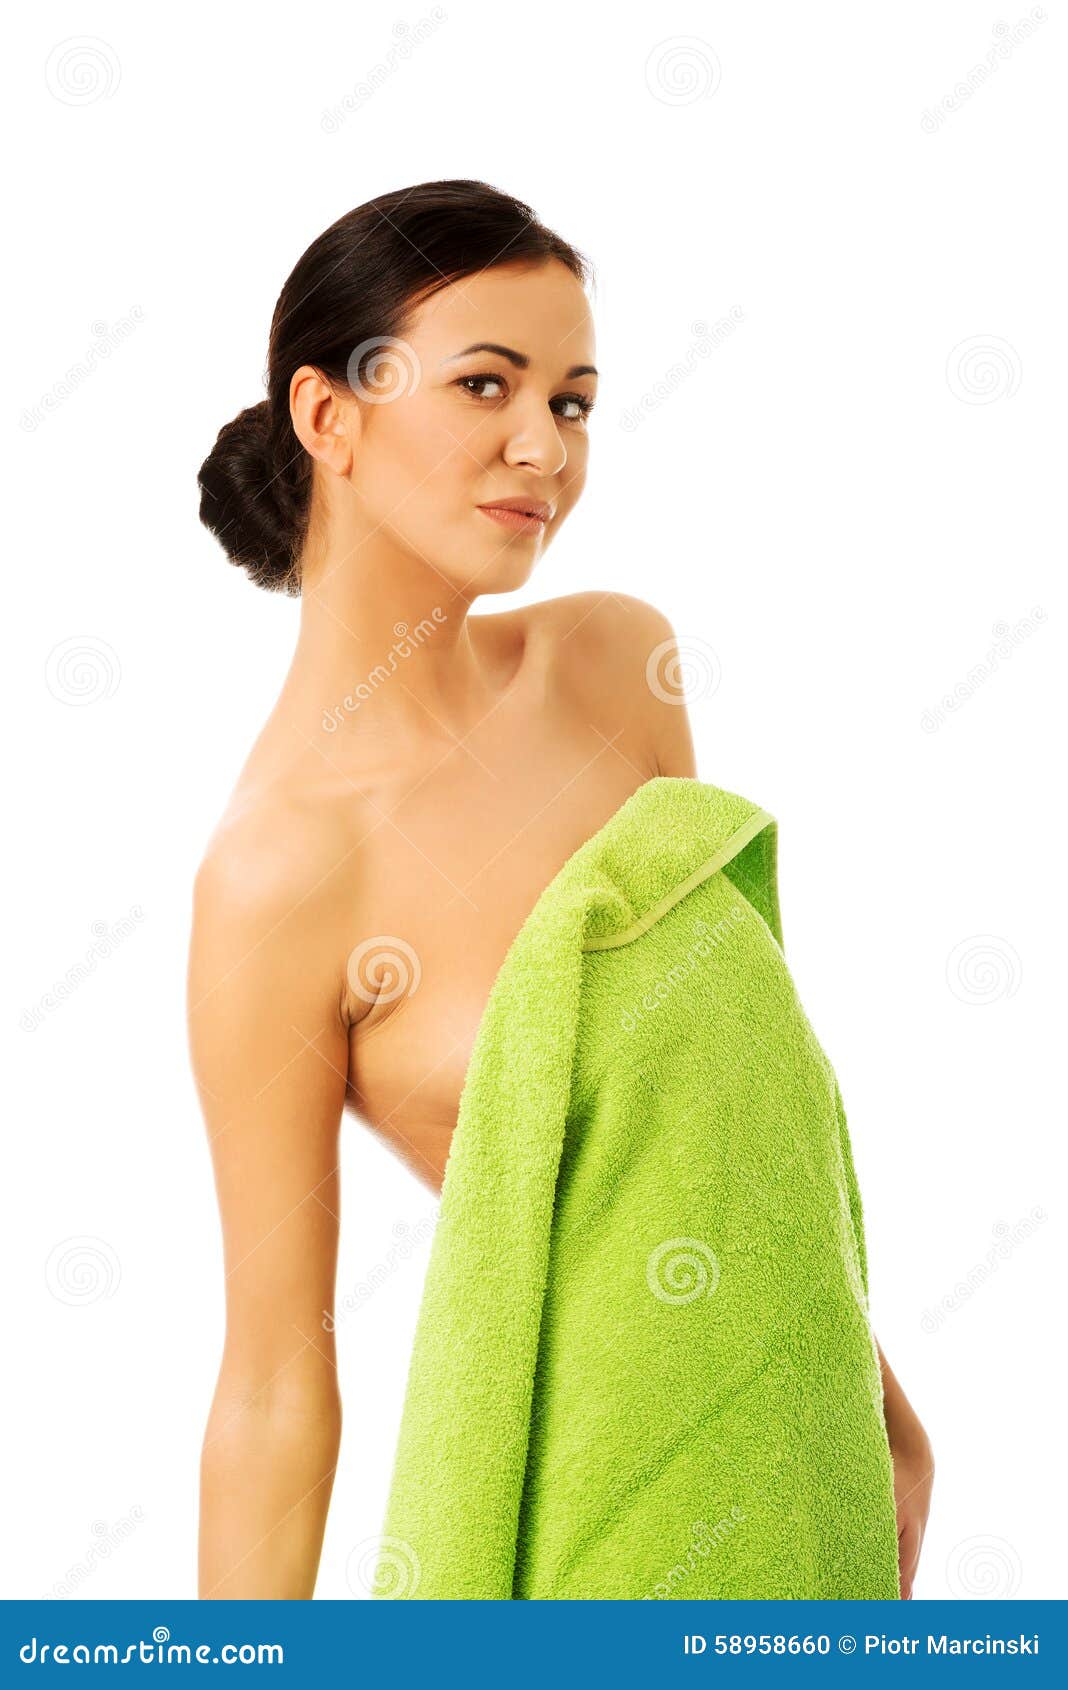 Ходит в полотенце. Девушка обернутая в полотенце. Девушка в одном полотенце. Женщины завёрнутые в полотенце. Девушка завернутая в полотенце.